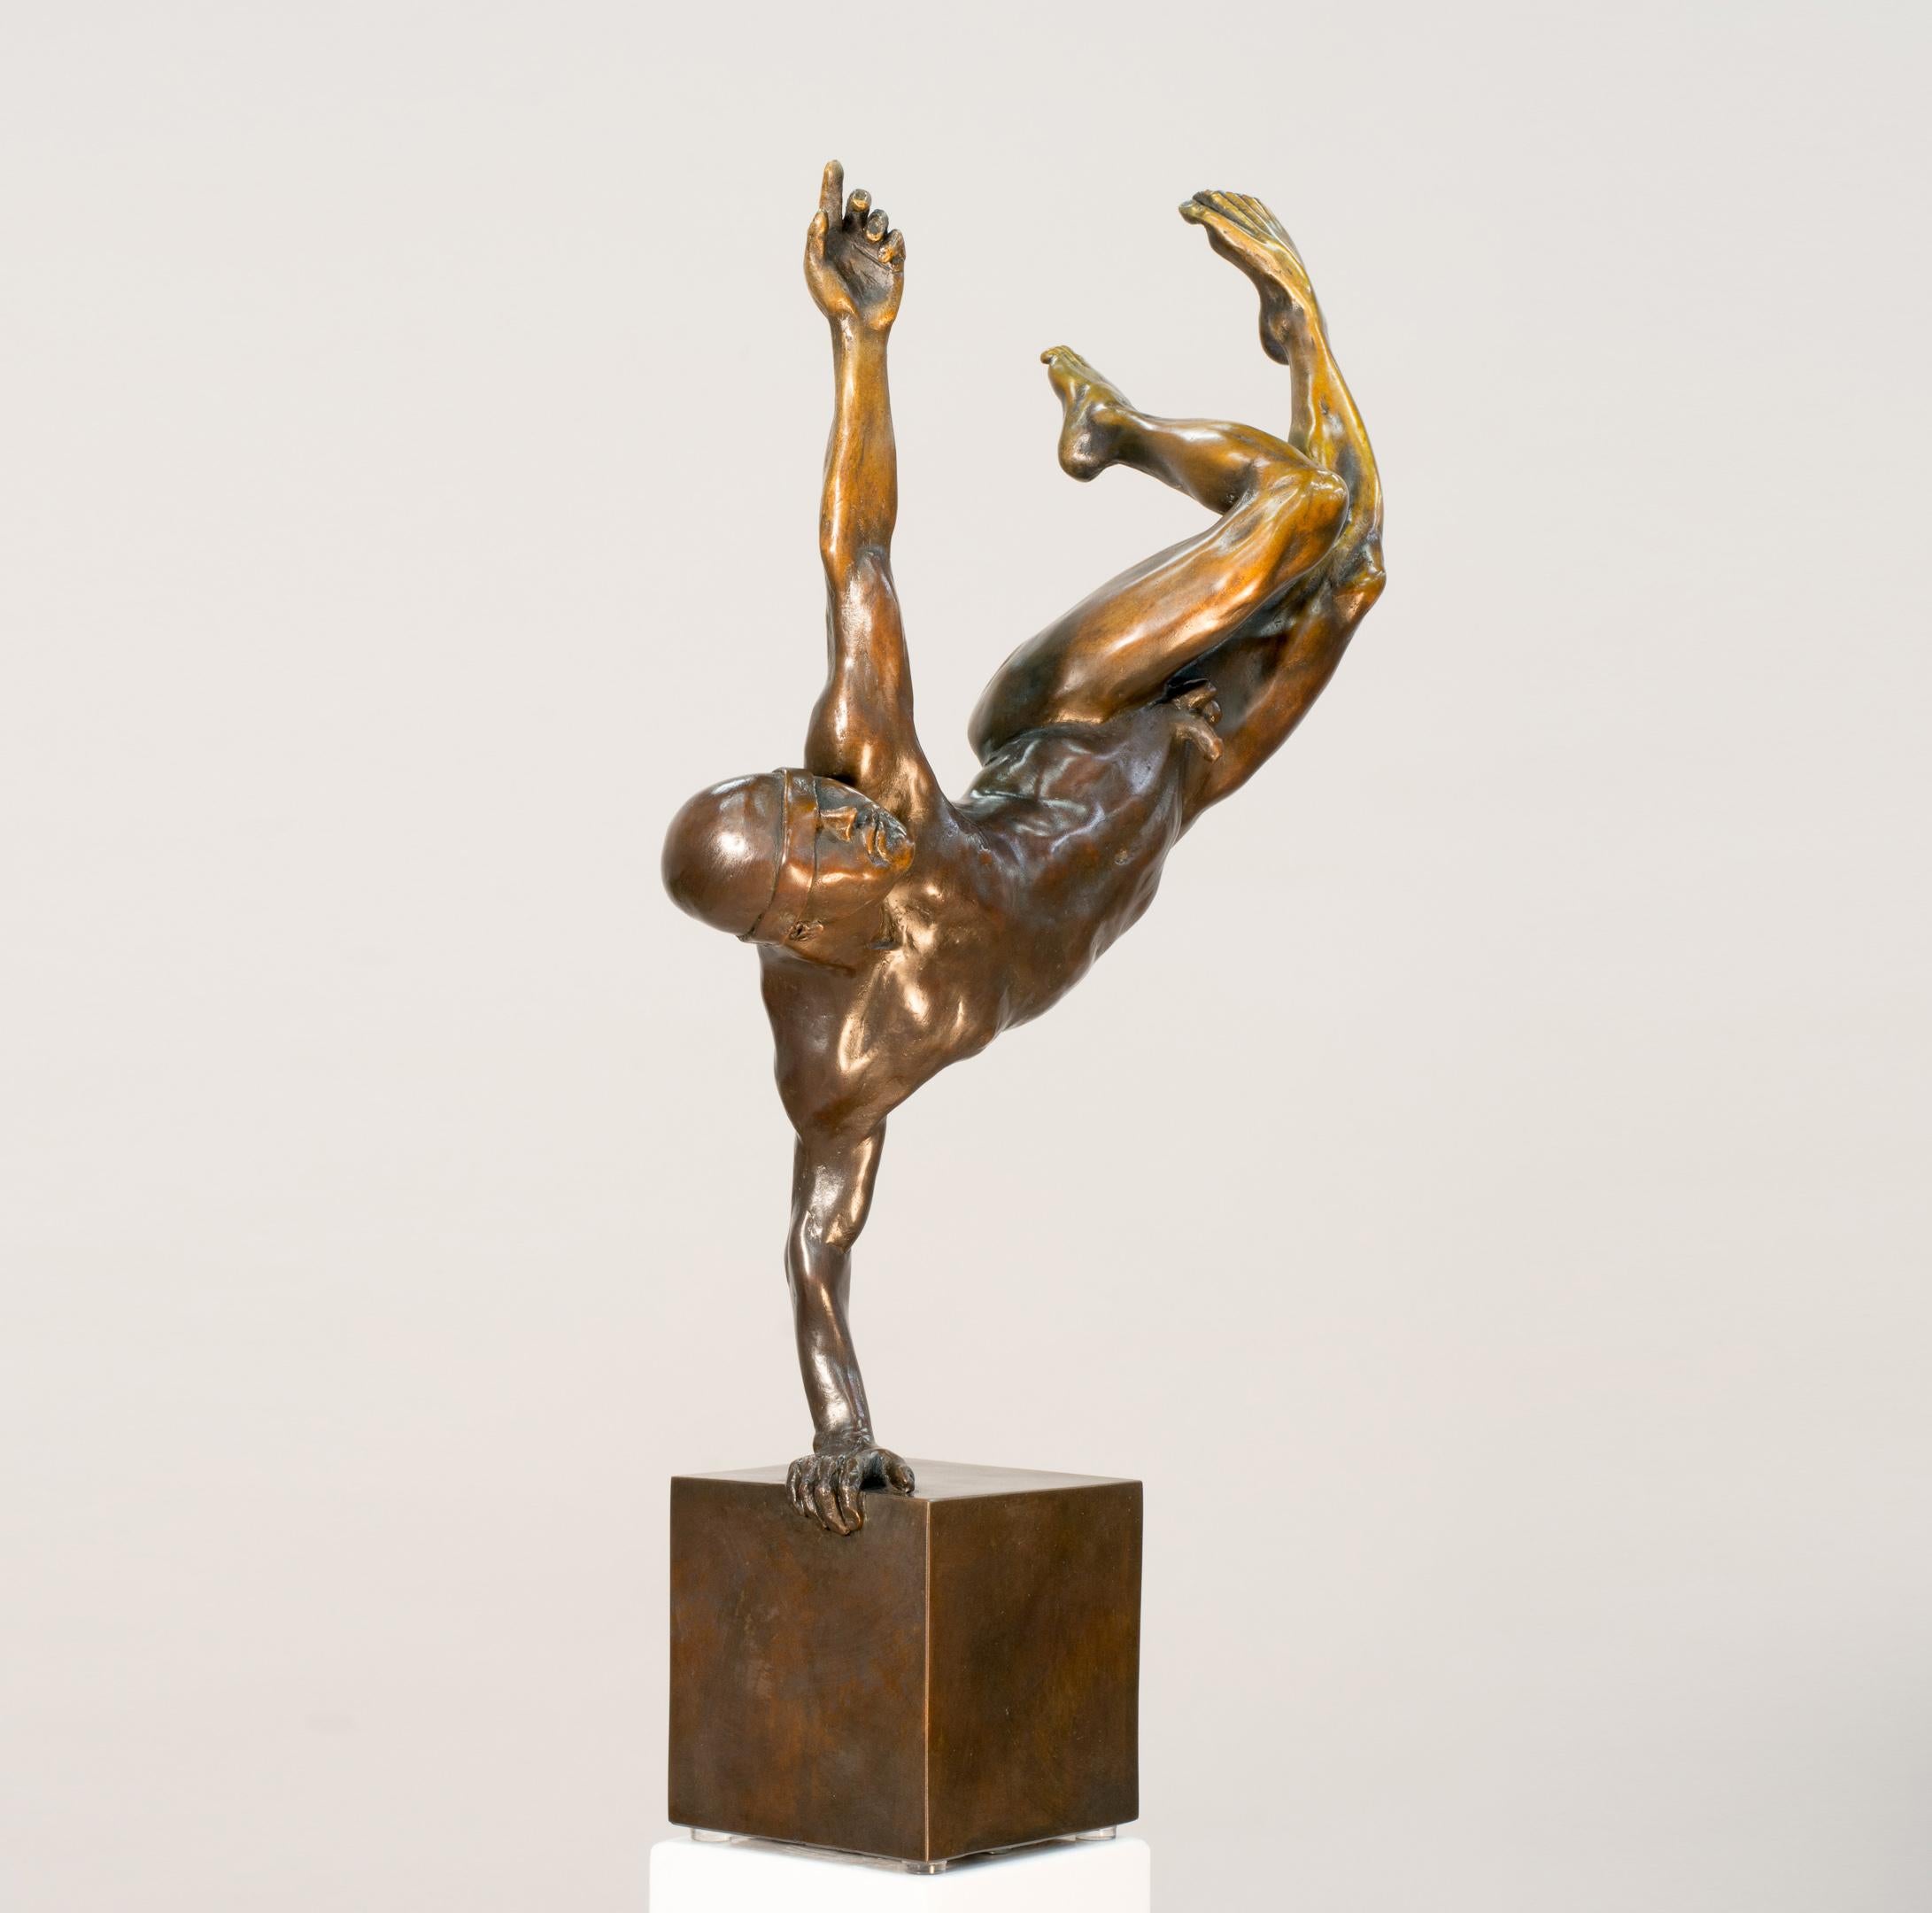 Yearning 2/9 - männlich, nackt, figurativ, statuette, Bronzeskulptur – Sculpture von W.W. Hung